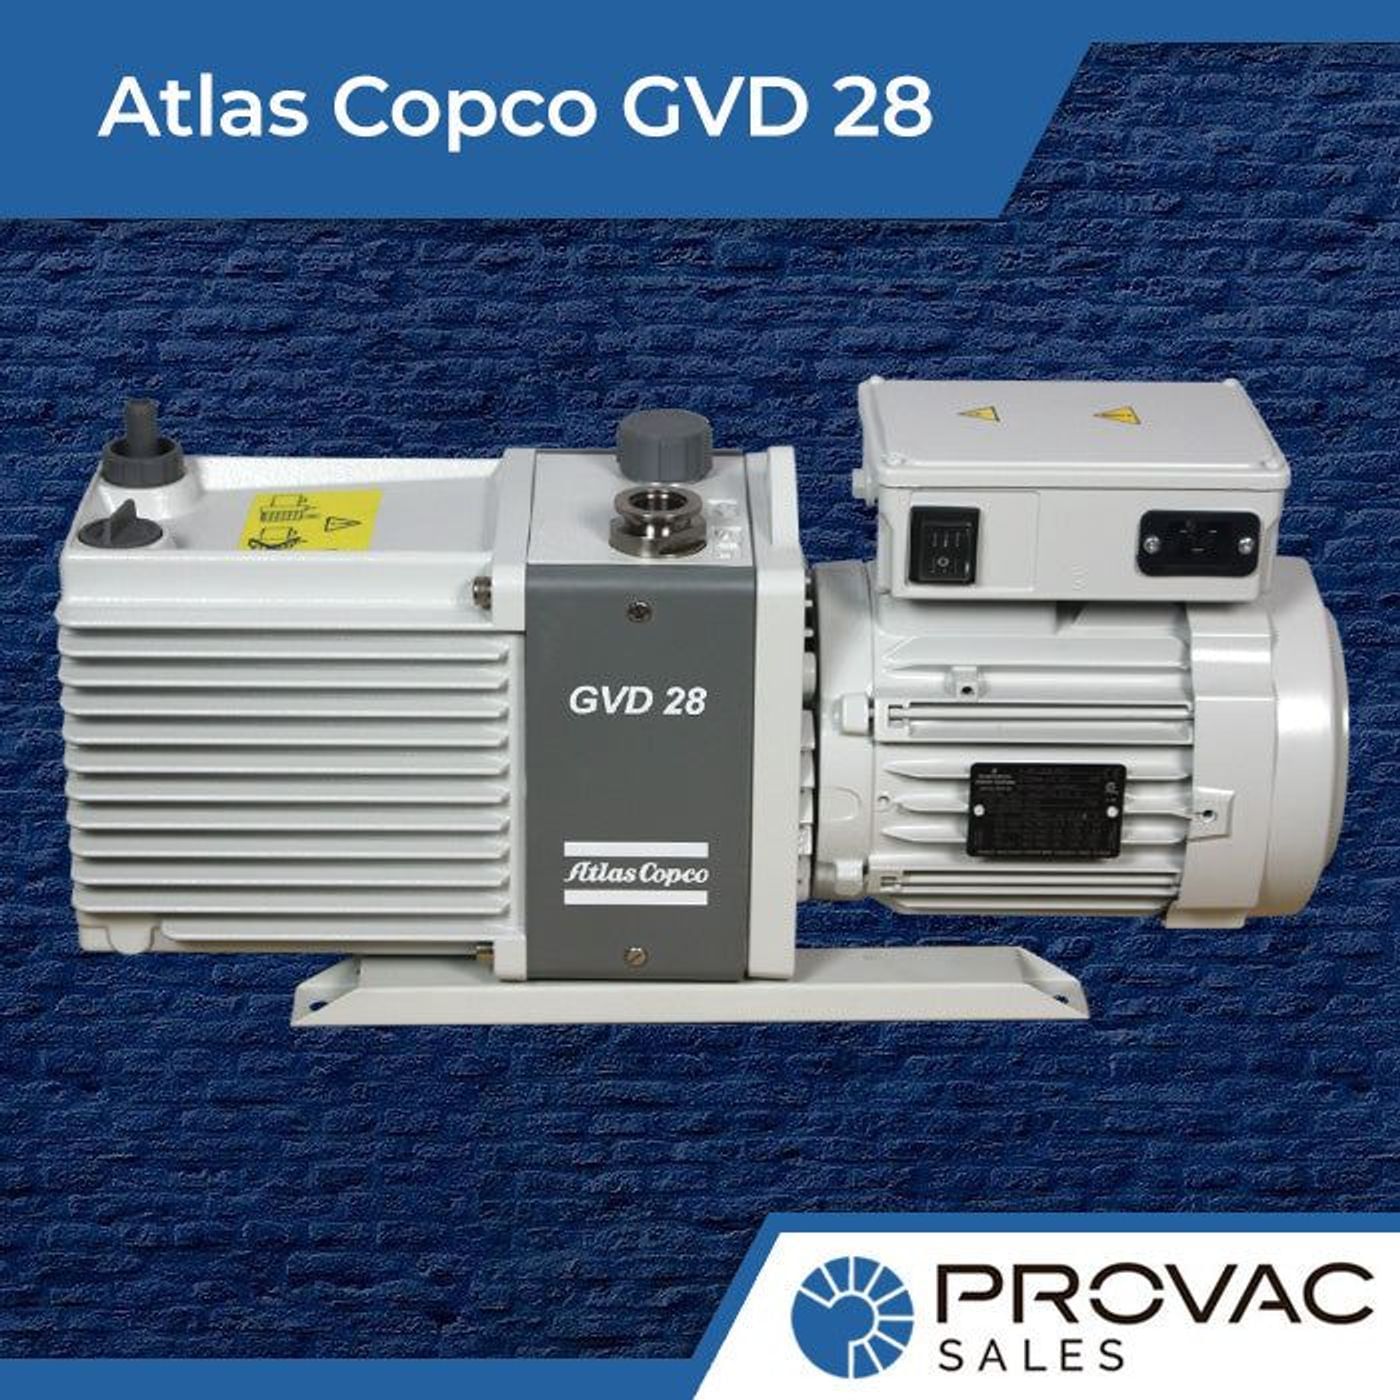 Atlas Copco GVD 28: 22.3 CFM Vacuum Work-Horse